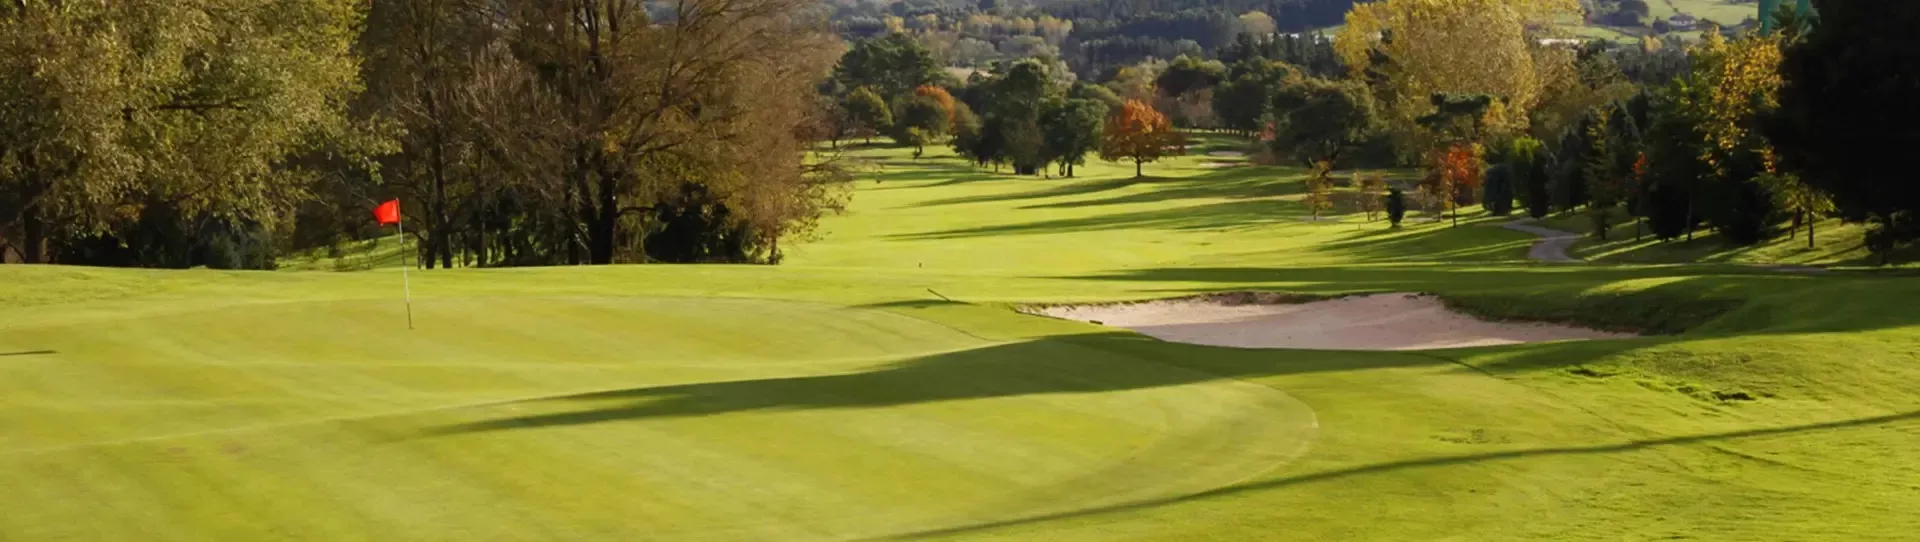 Spain golf courses - Laukariz Golf Course - Photo 1